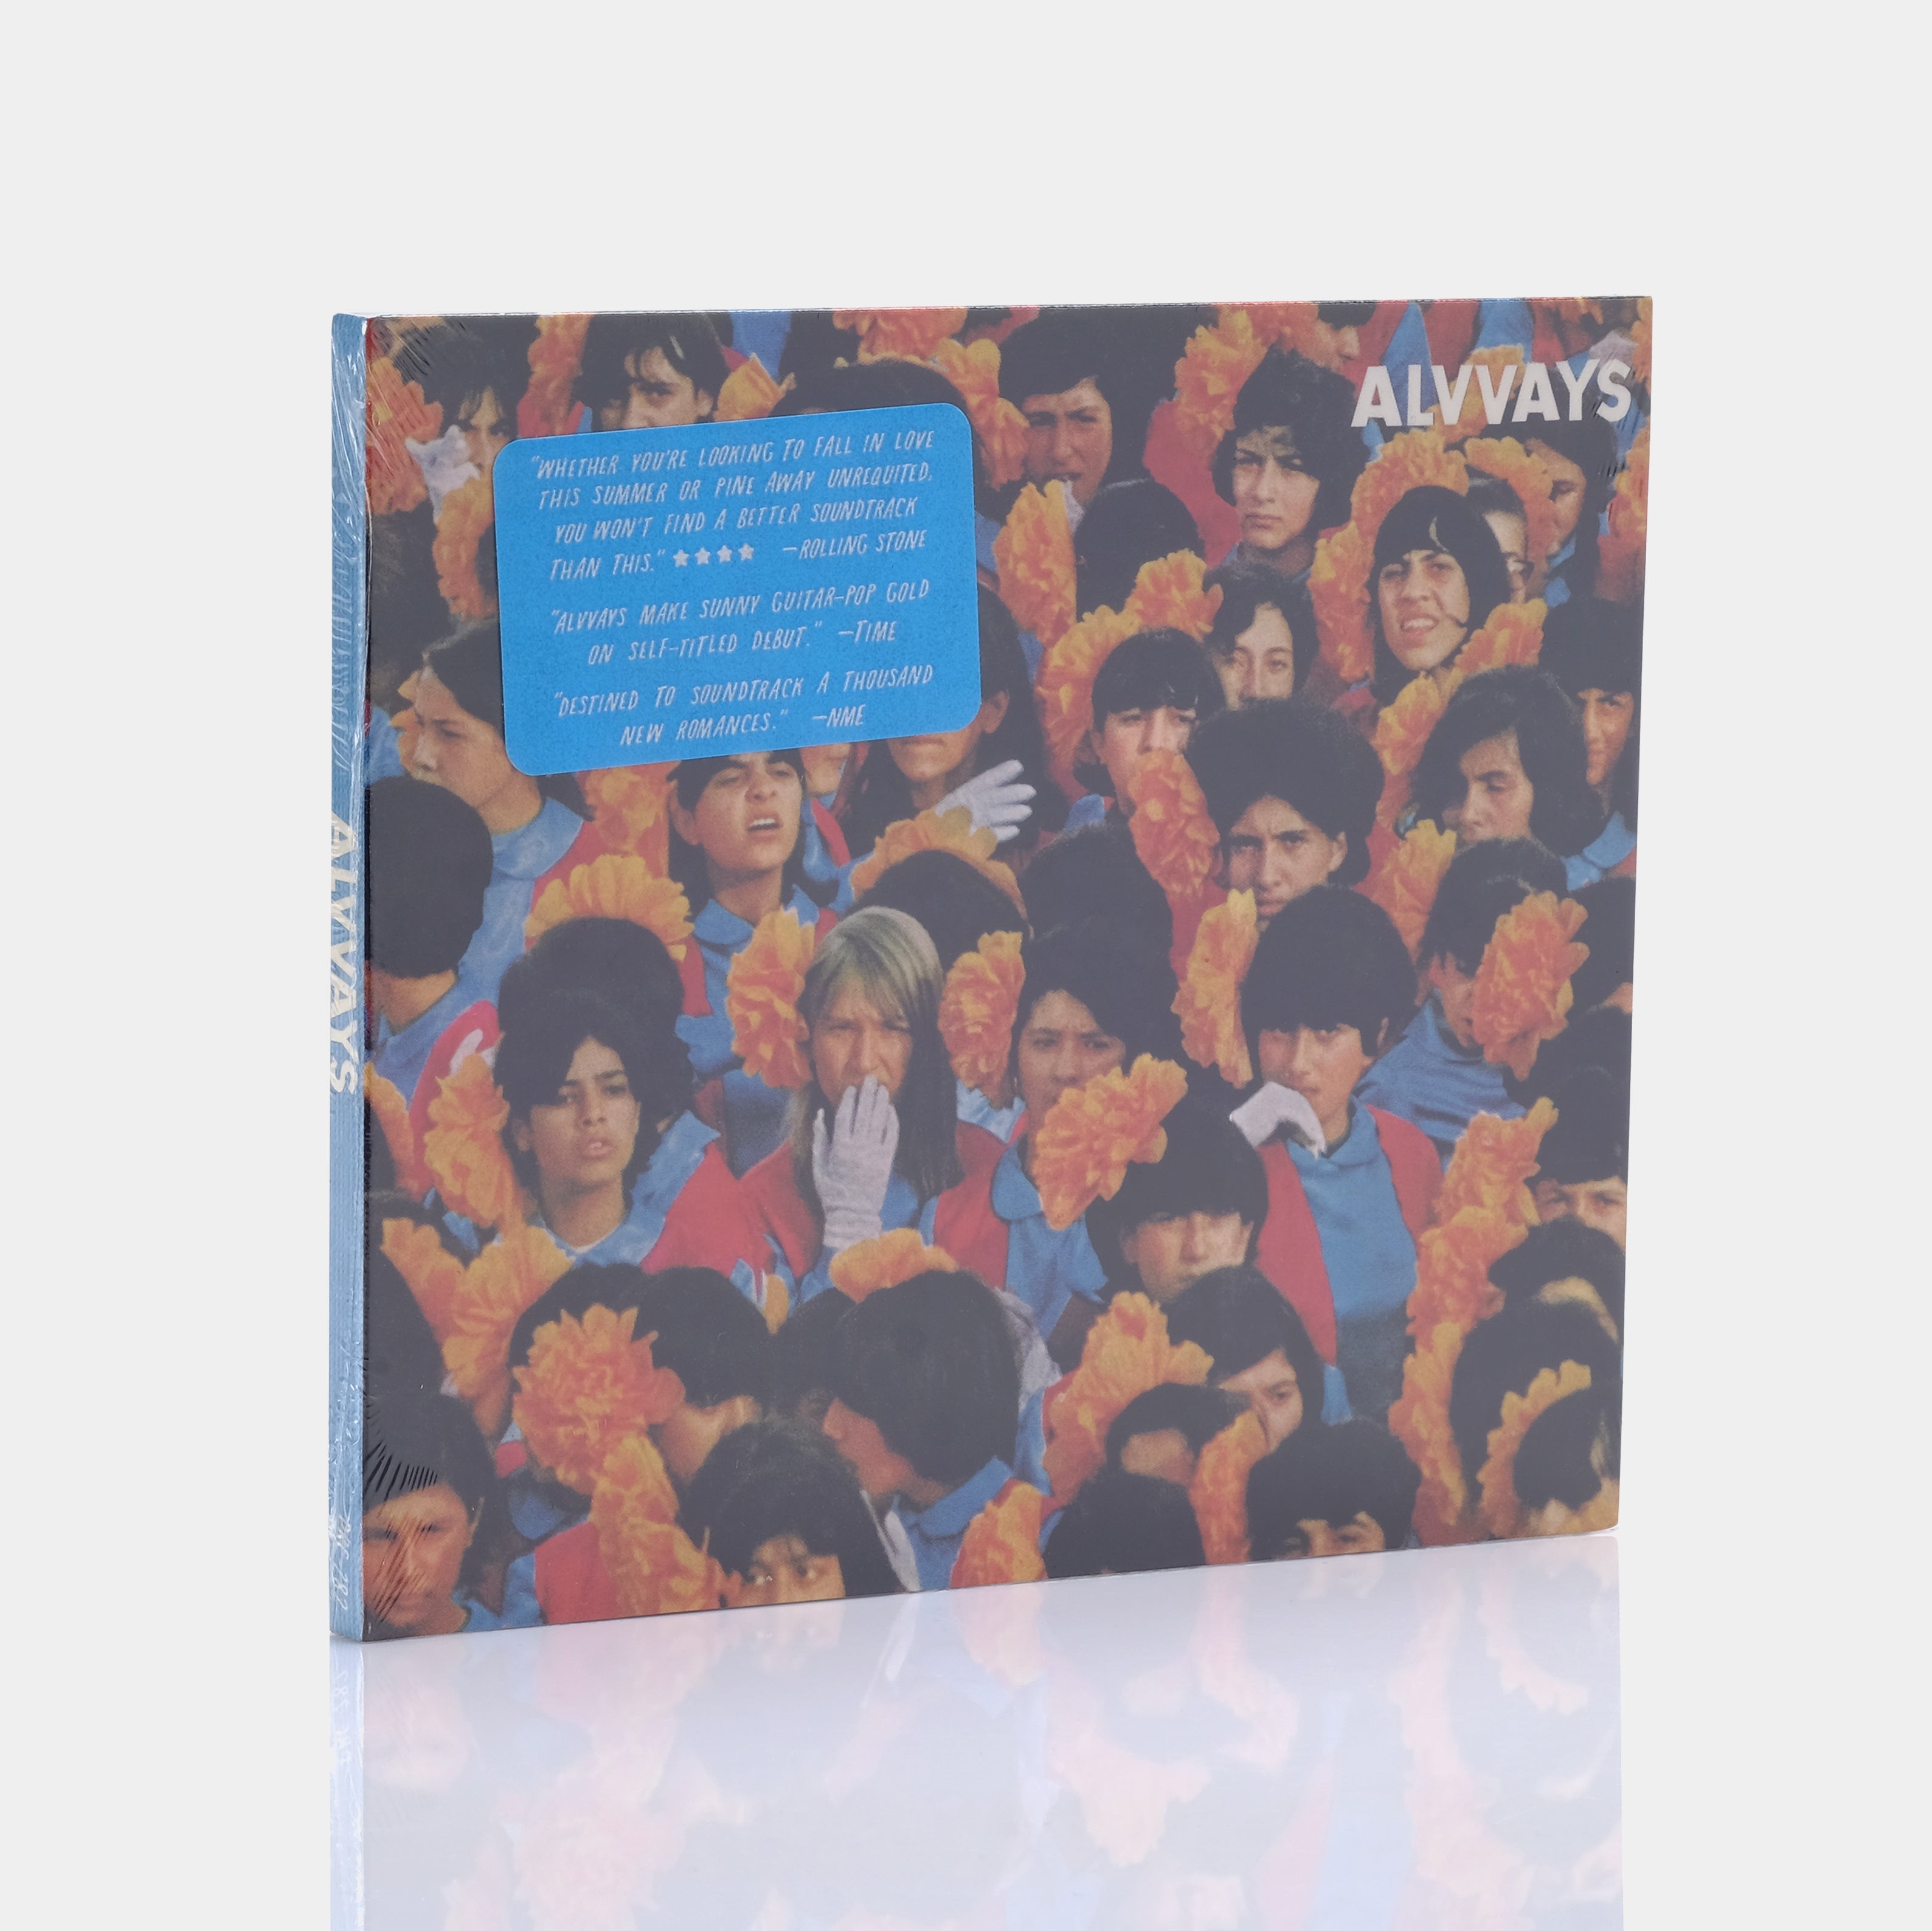 Alvvays - Alvvays CD